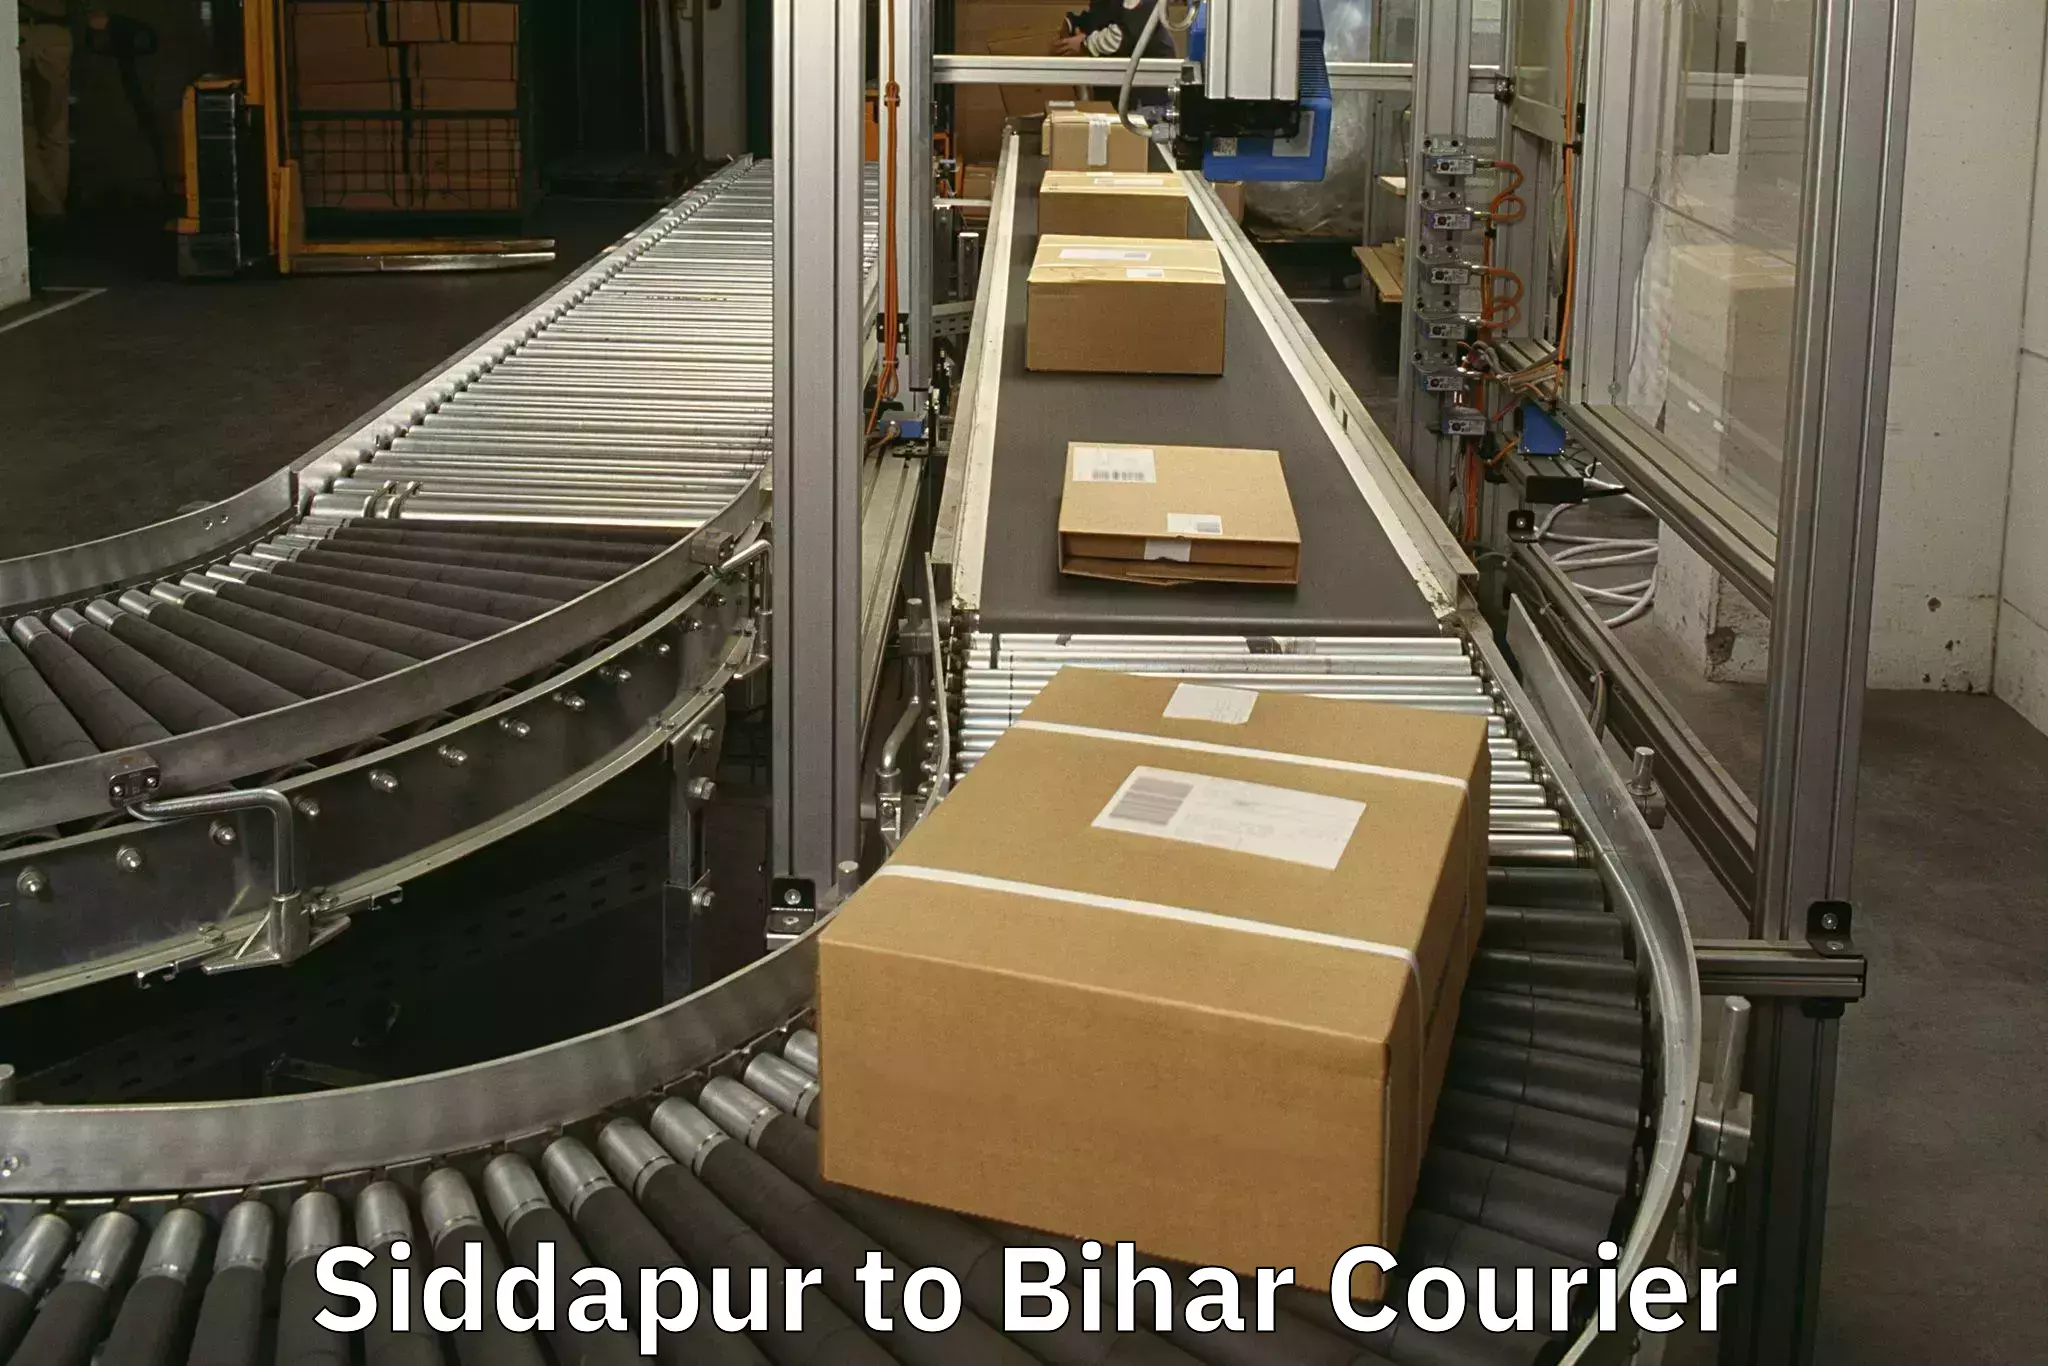 Luggage transit service Siddapur to Bihar